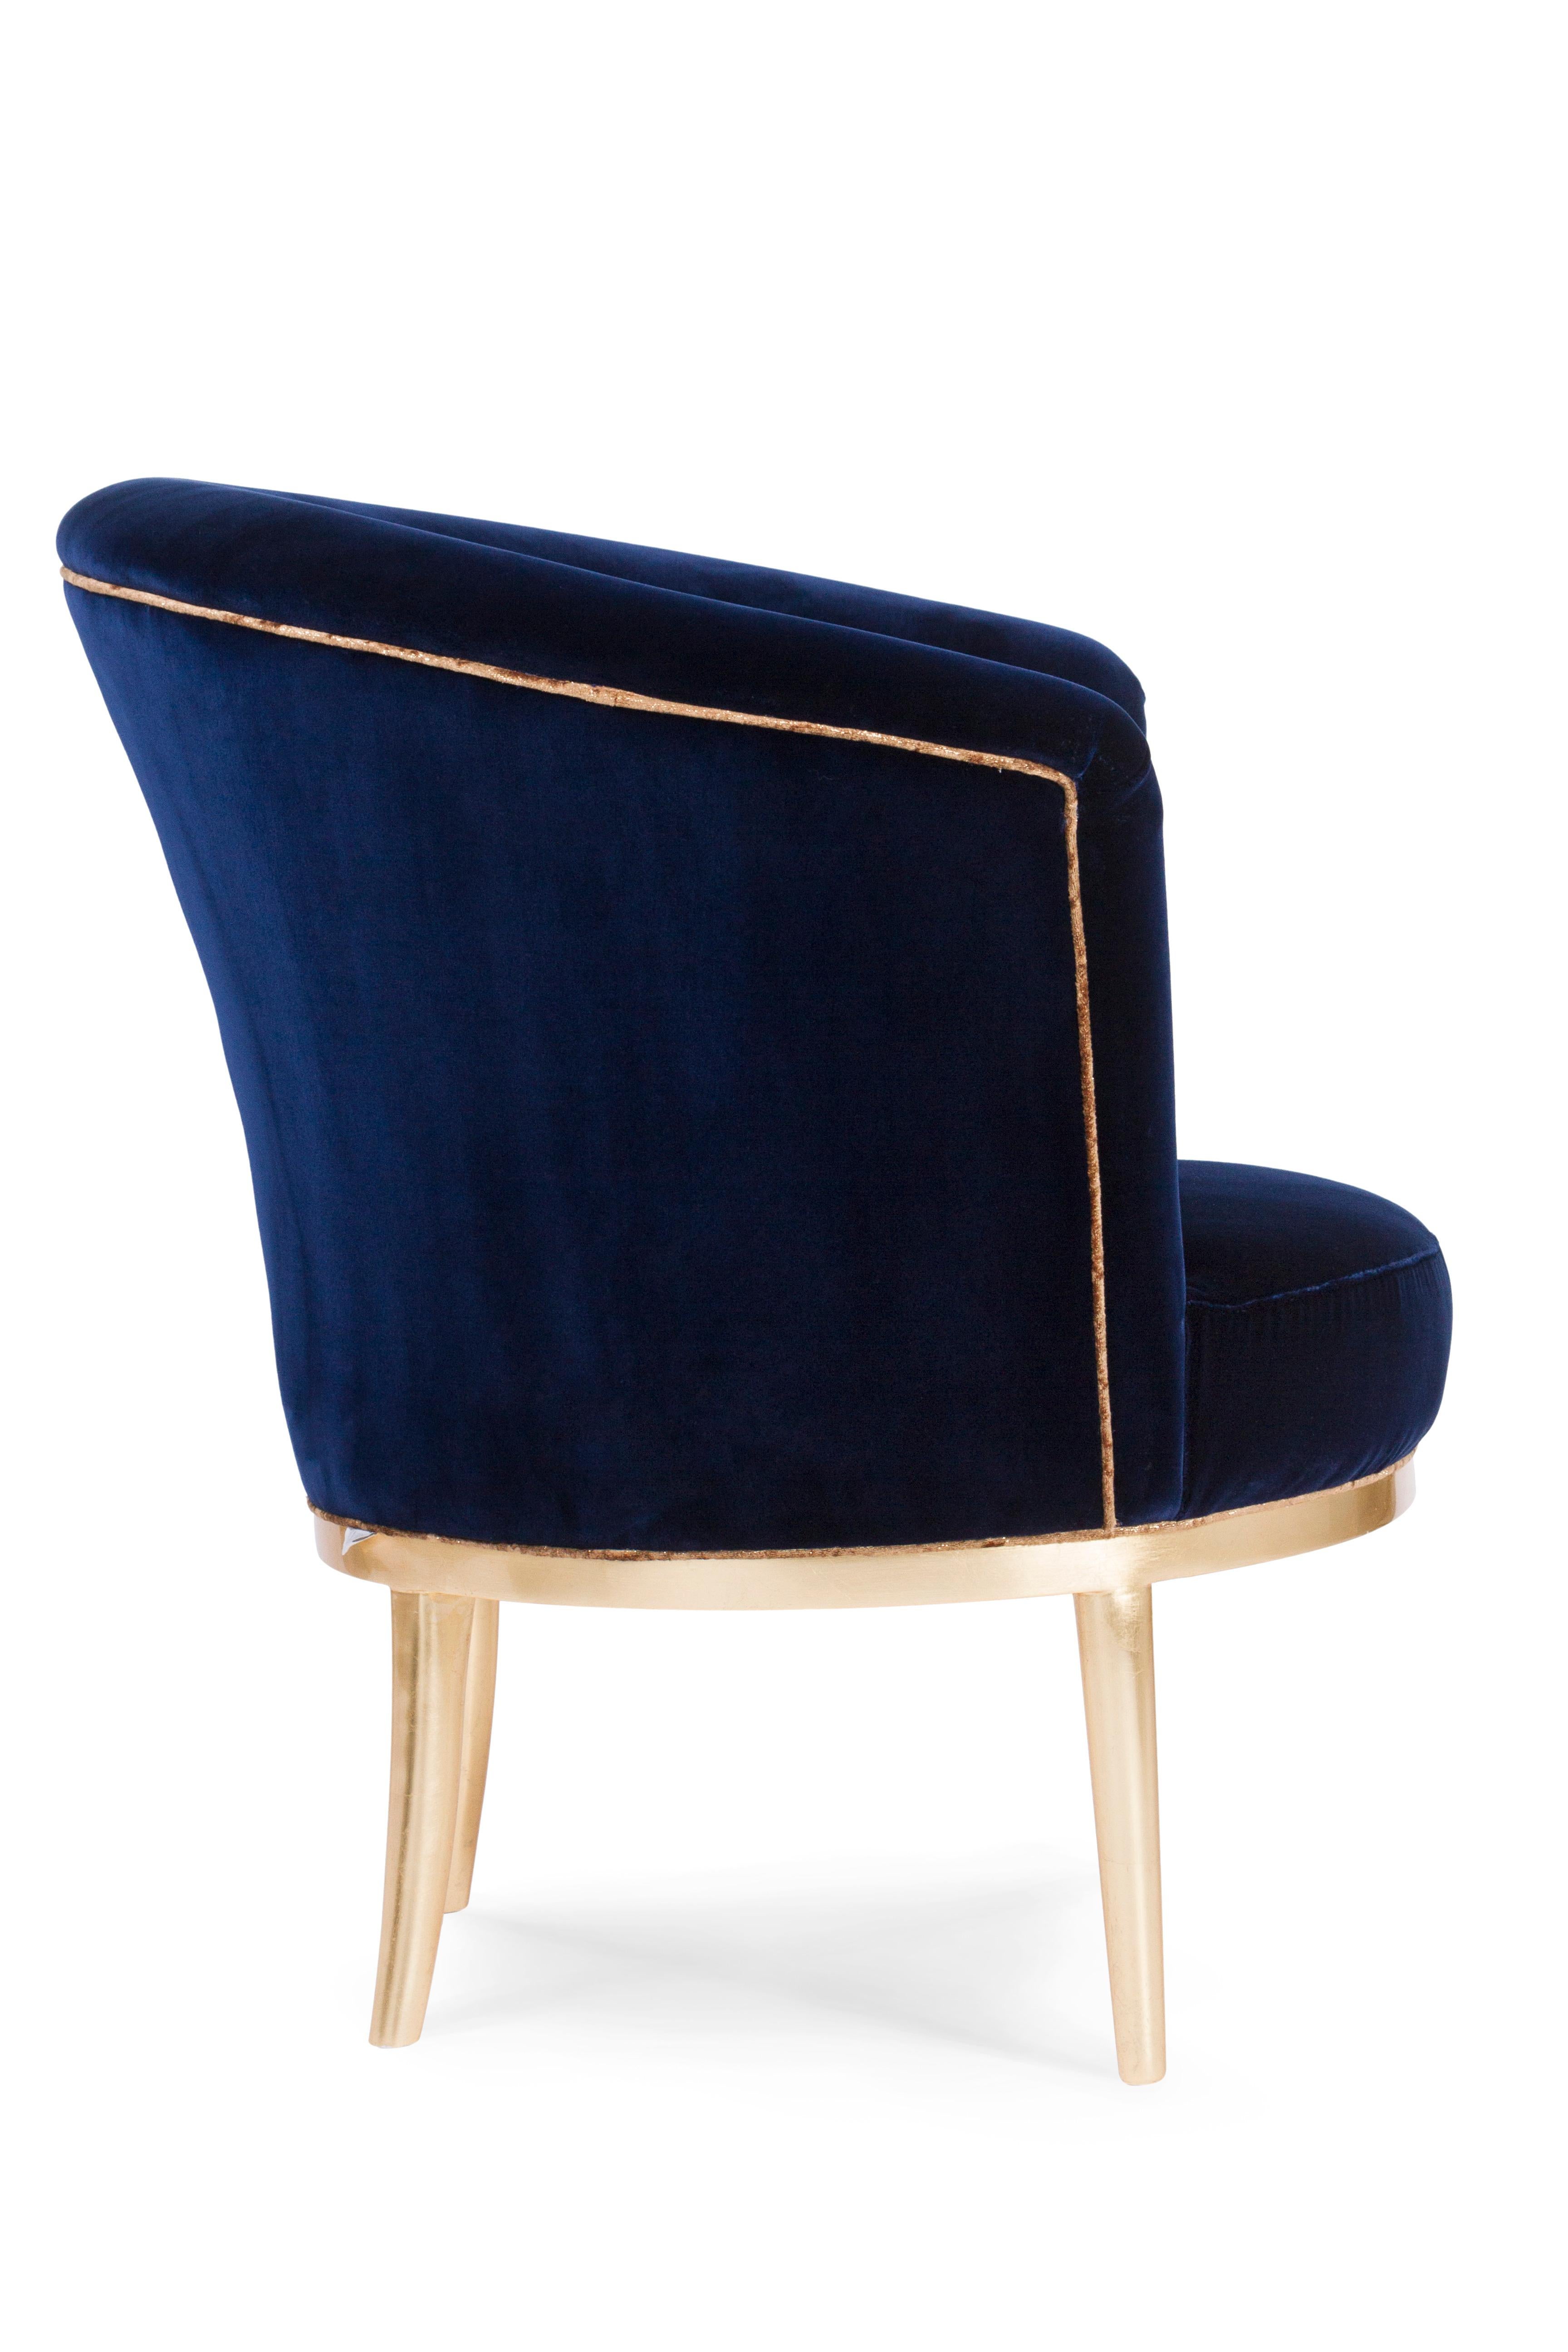 Modern Art Deco Lisboa Lounge Chair Blue Velvet Gold Leaf Handmade Portugal Greenapple For Sale